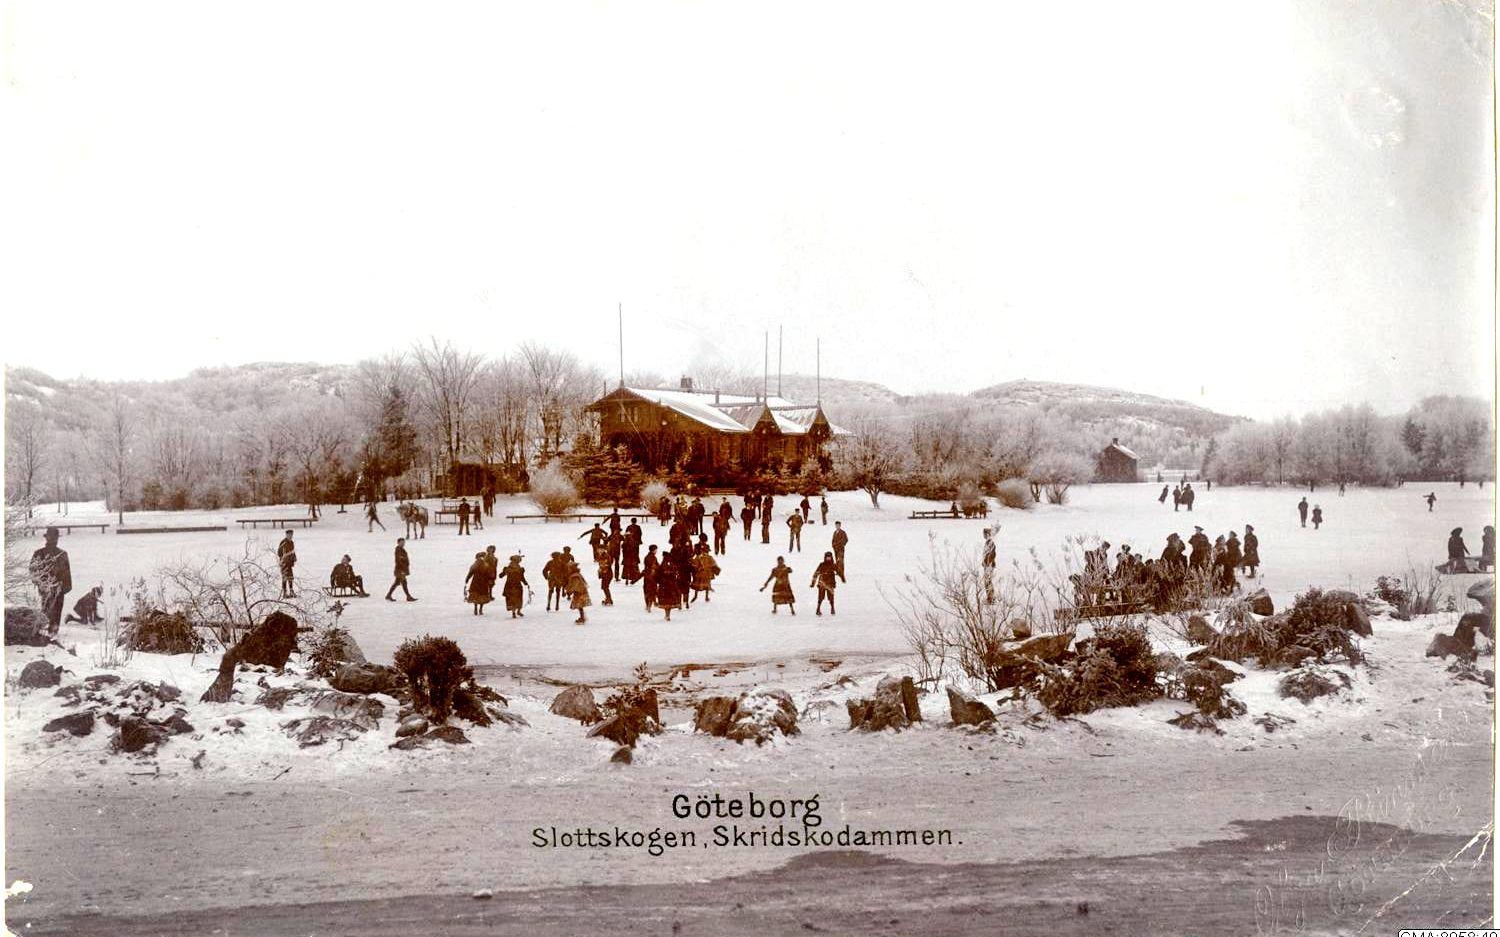 Skridskoåkare på Stora Dammen i Slottsskogen. Vinterpaviljongen syns i bakgrunden med. Bilden är tagen 1901.